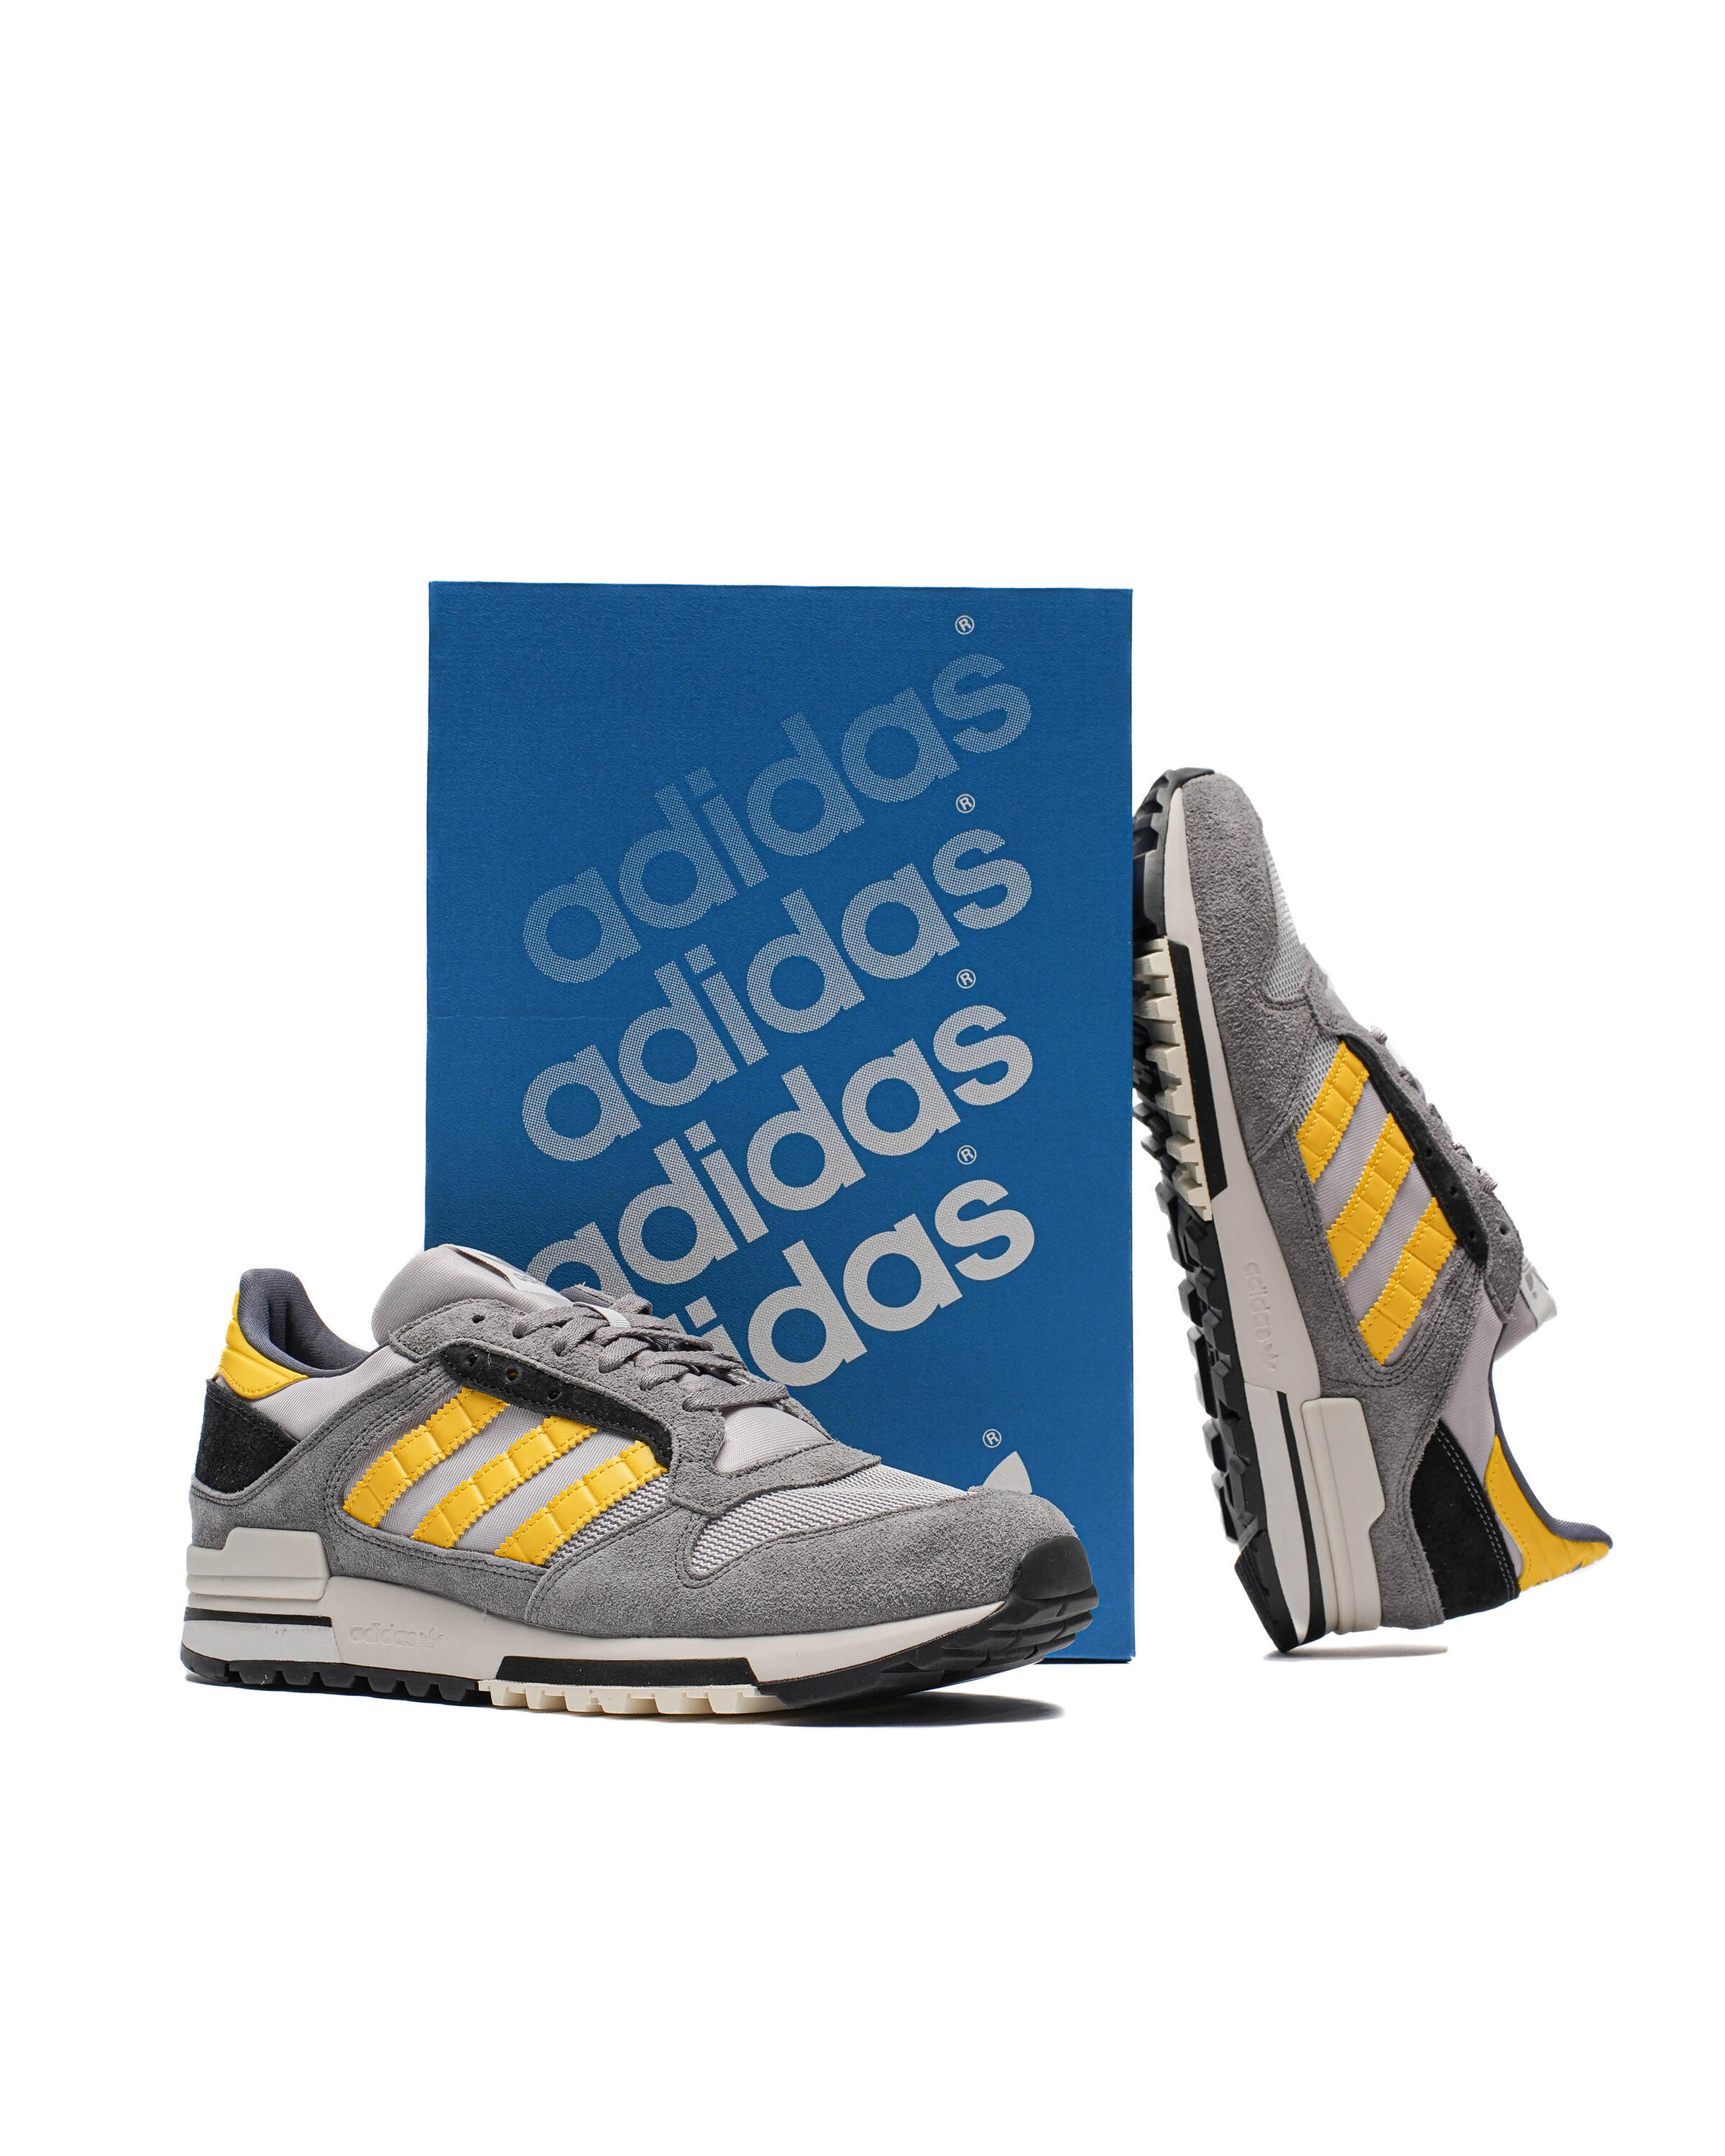 Adidas Originals ZX 600 | IH2712 | AFEW STORE